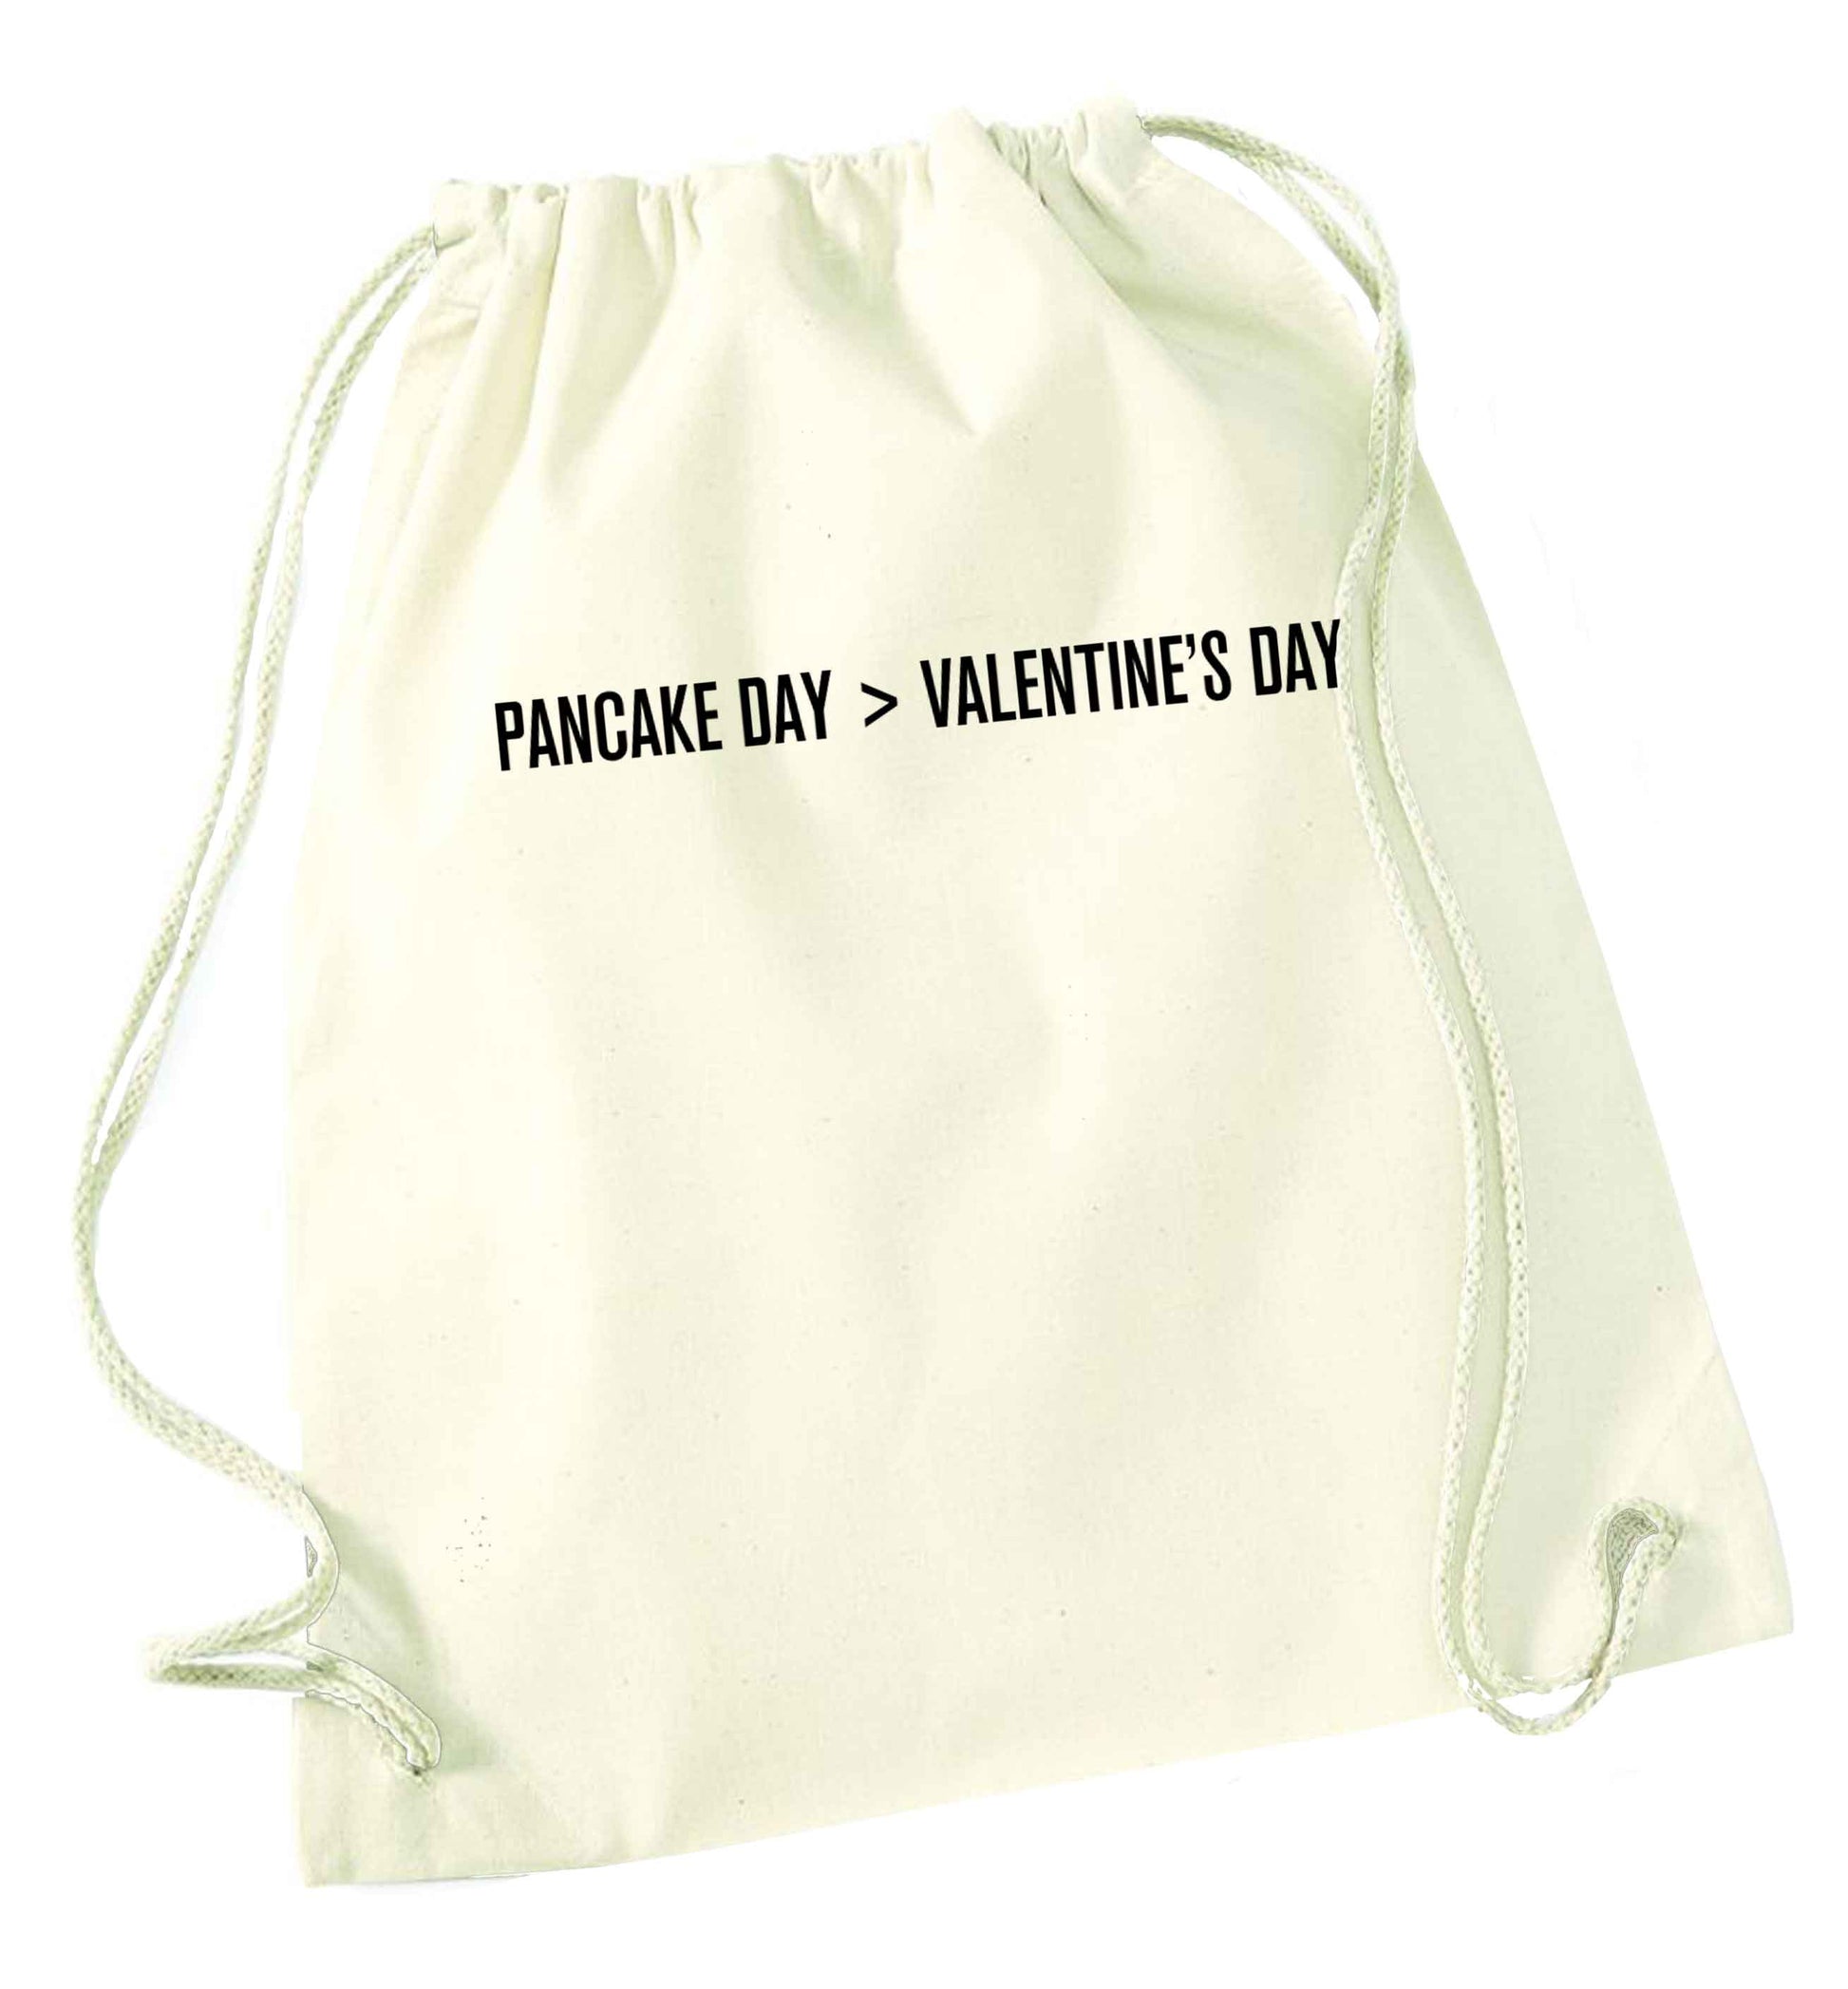 Pancake day > valentines day natural drawstring bag